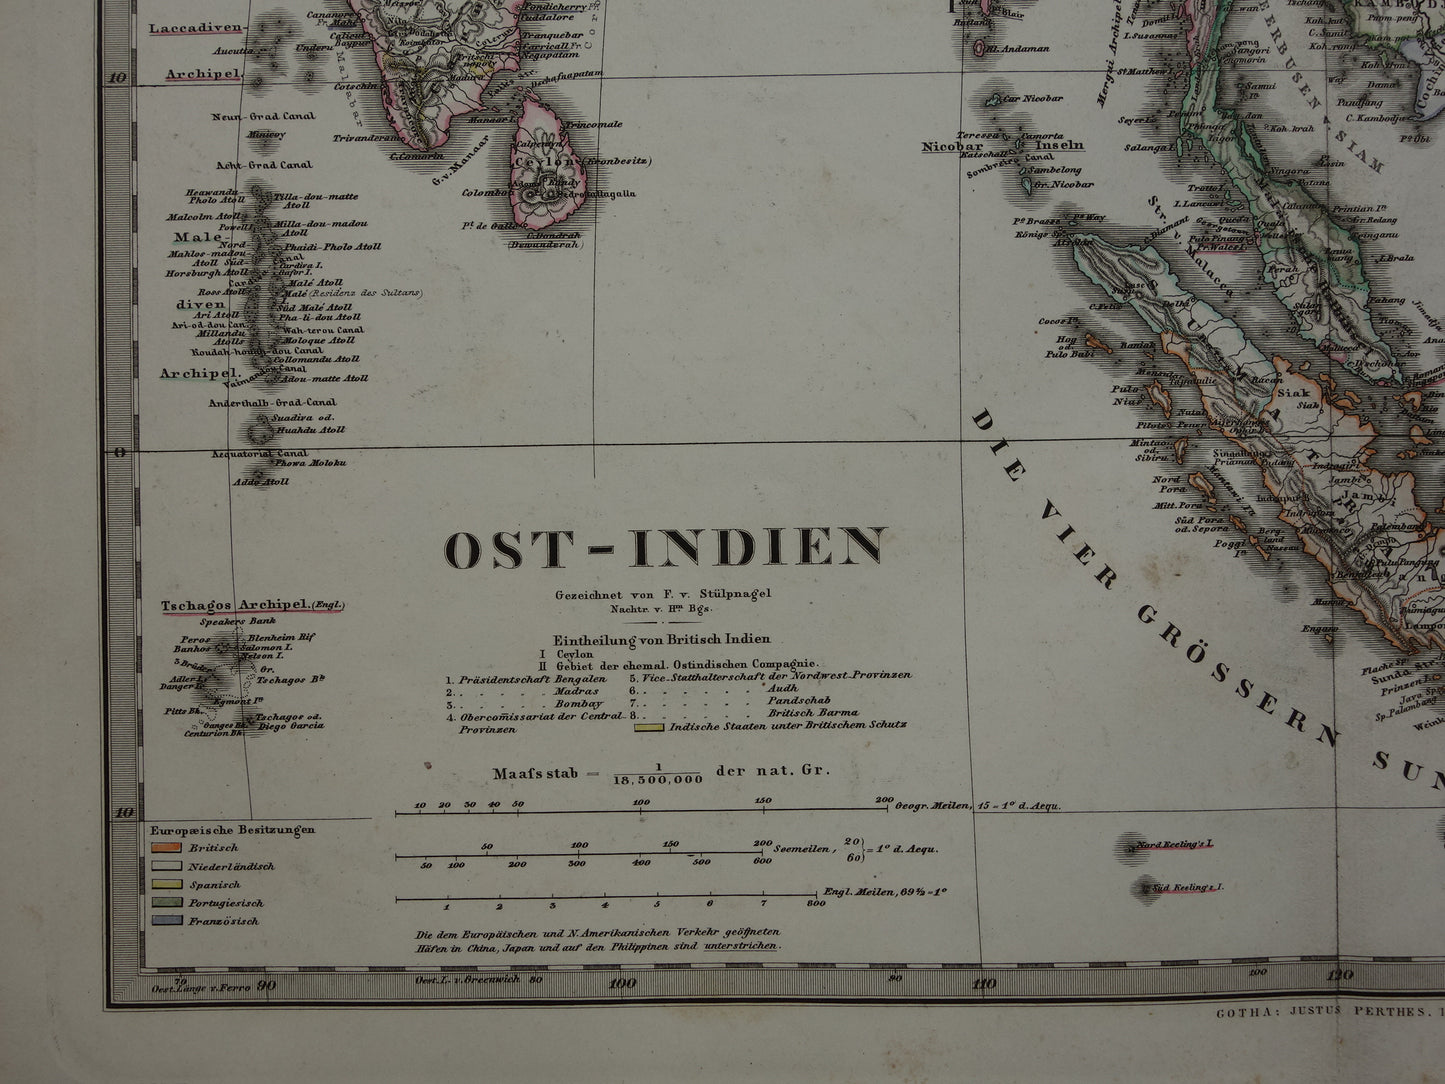 INDONESIË oude kaart van zuidoost Azië in 1867 originele antieke landkaart India Filipijnen Thailand Vietnam vintage poster